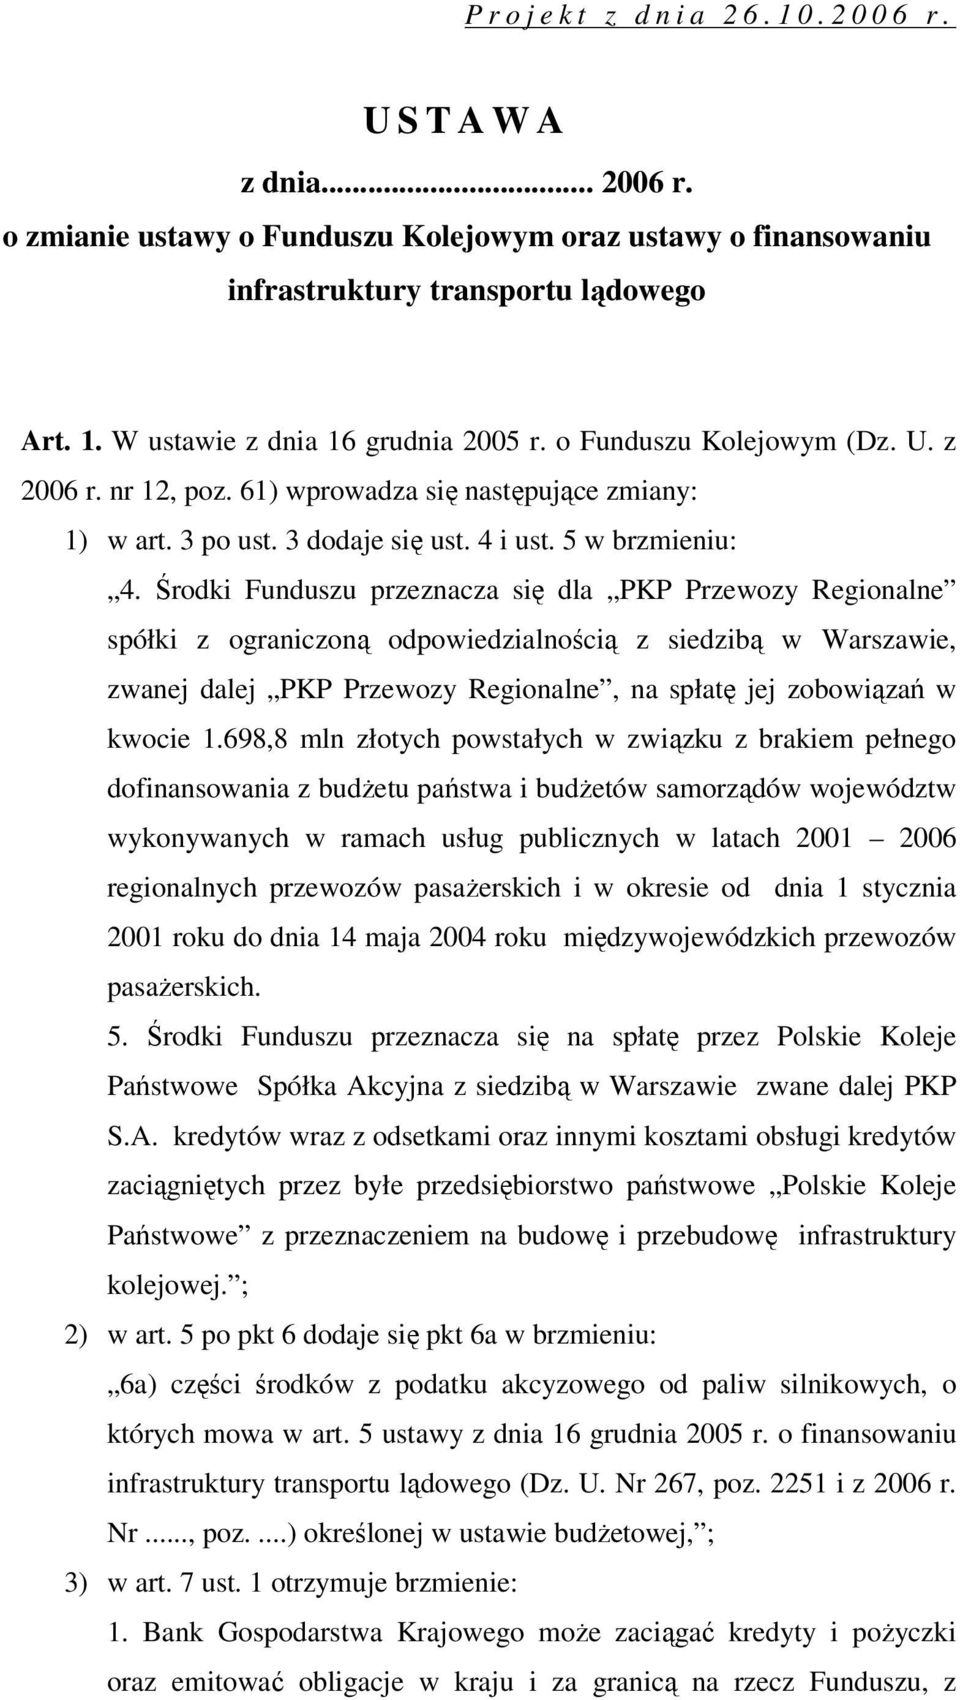 Środki Funduszu przeznacza się dla PKP Przewozy Regionalne spółki z ograniczoną odpowiedzialnością z siedzibą w Warszawie, zwanej dalej PKP Przewozy Regionalne, na spłatę jej zobowiązań w kwocie 1.